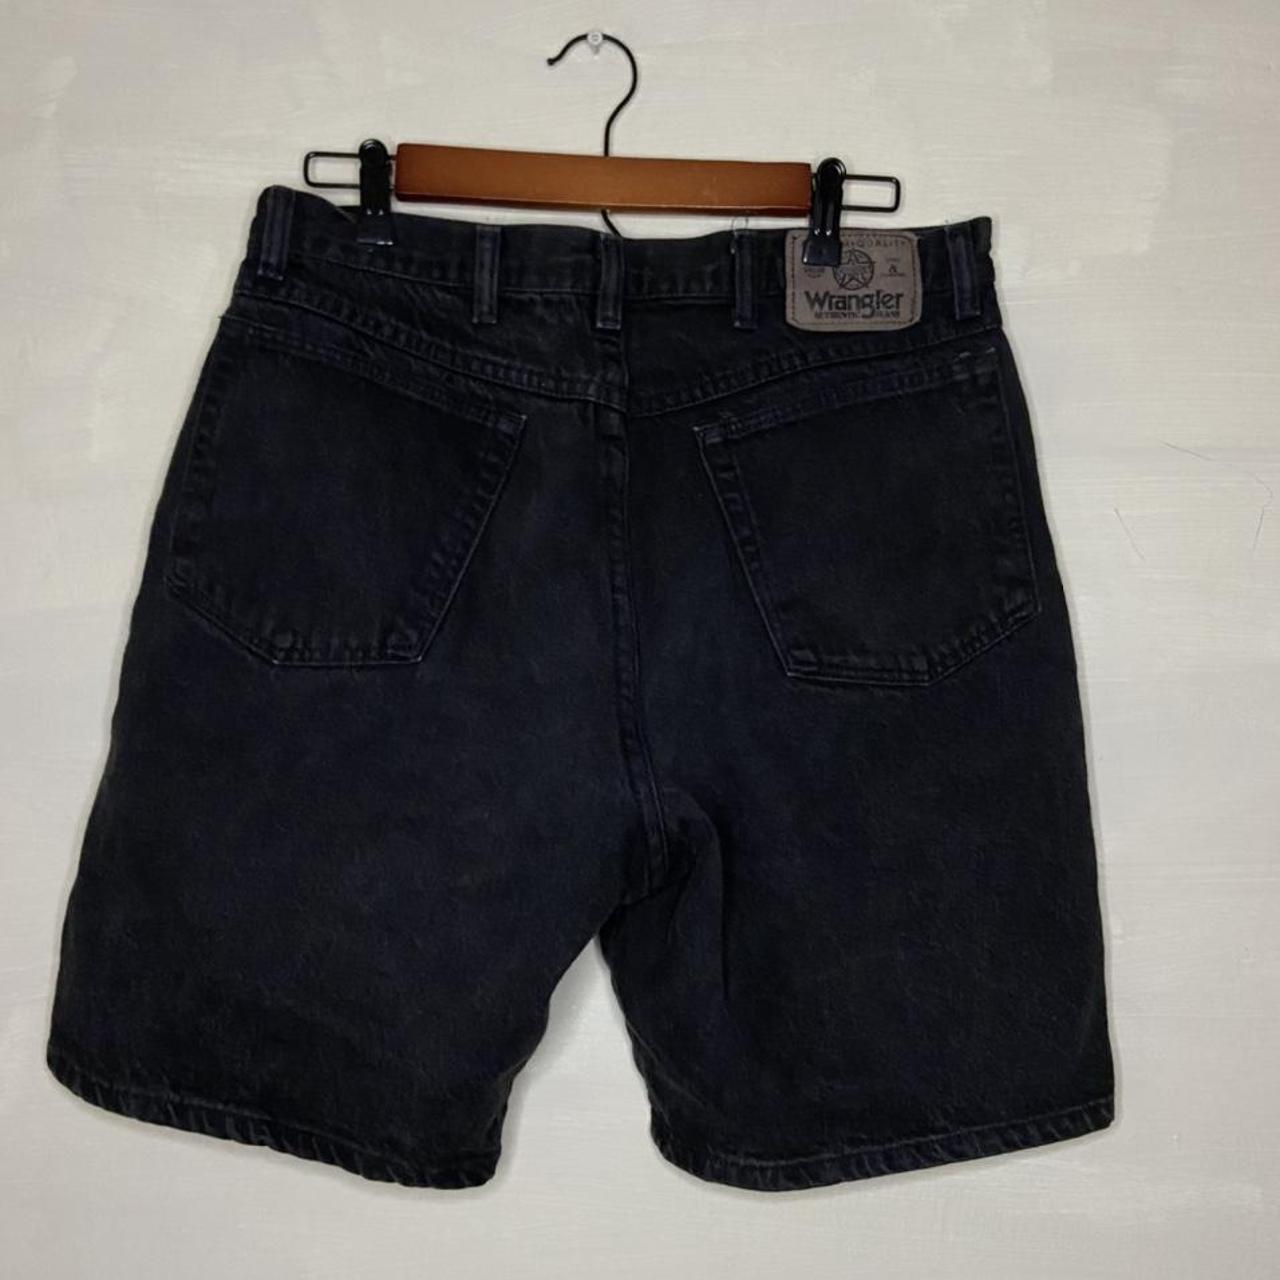 Vintage Wrangler Men’s Black Jean Shorts Size... - Depop